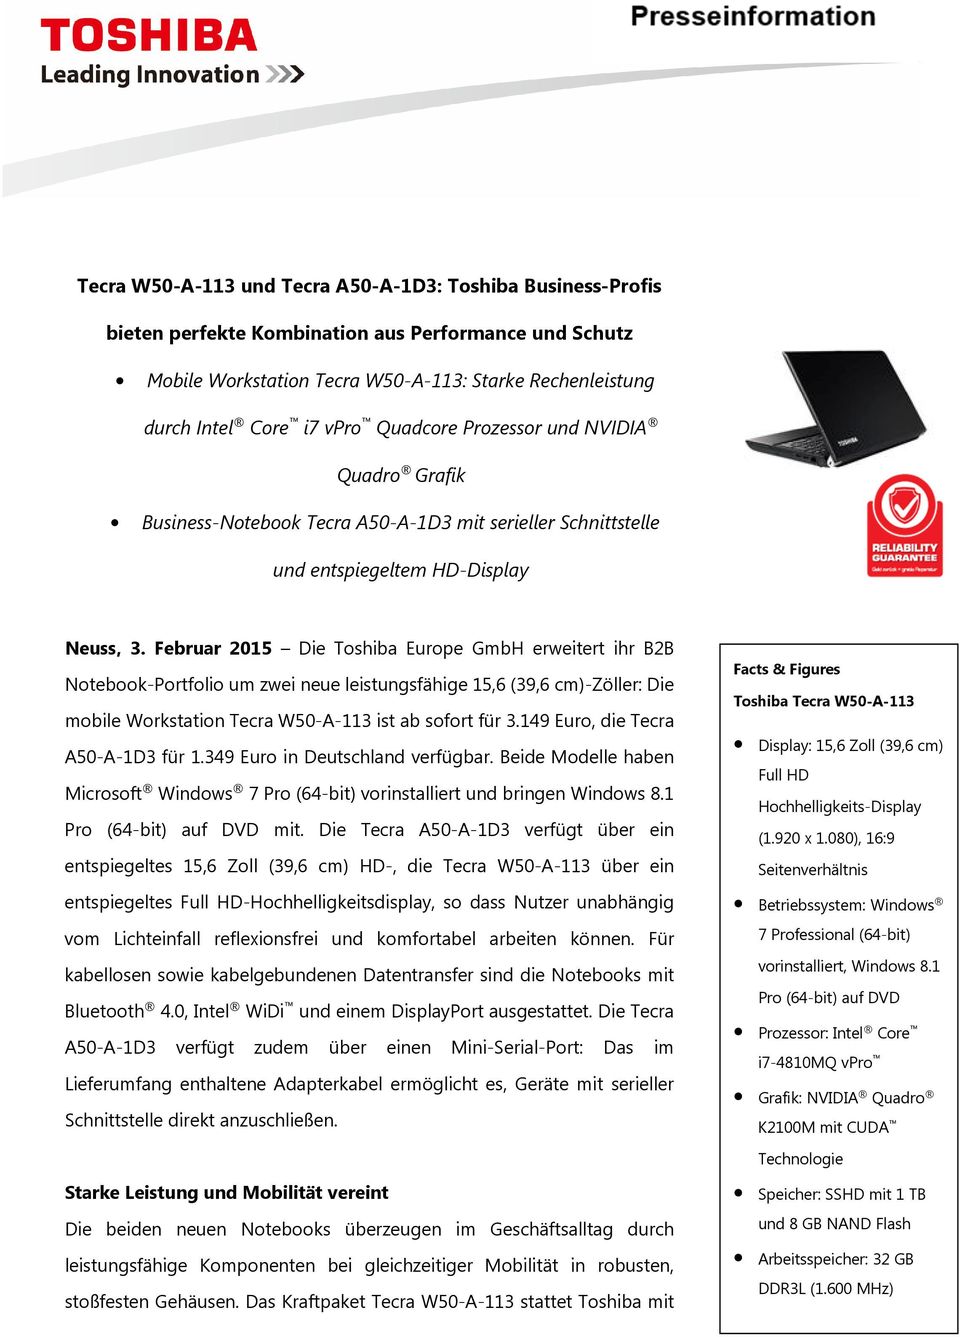 Februar 2015 Die Toshiba Europe GmbH erweitert ihr B2B Notebook-Portfolio um zwei neue leistungsfähige 15,6 (39,6 cm)-zöller: Die mobile Workstation Tecra W50-A-113 ist ab sofort für 3.